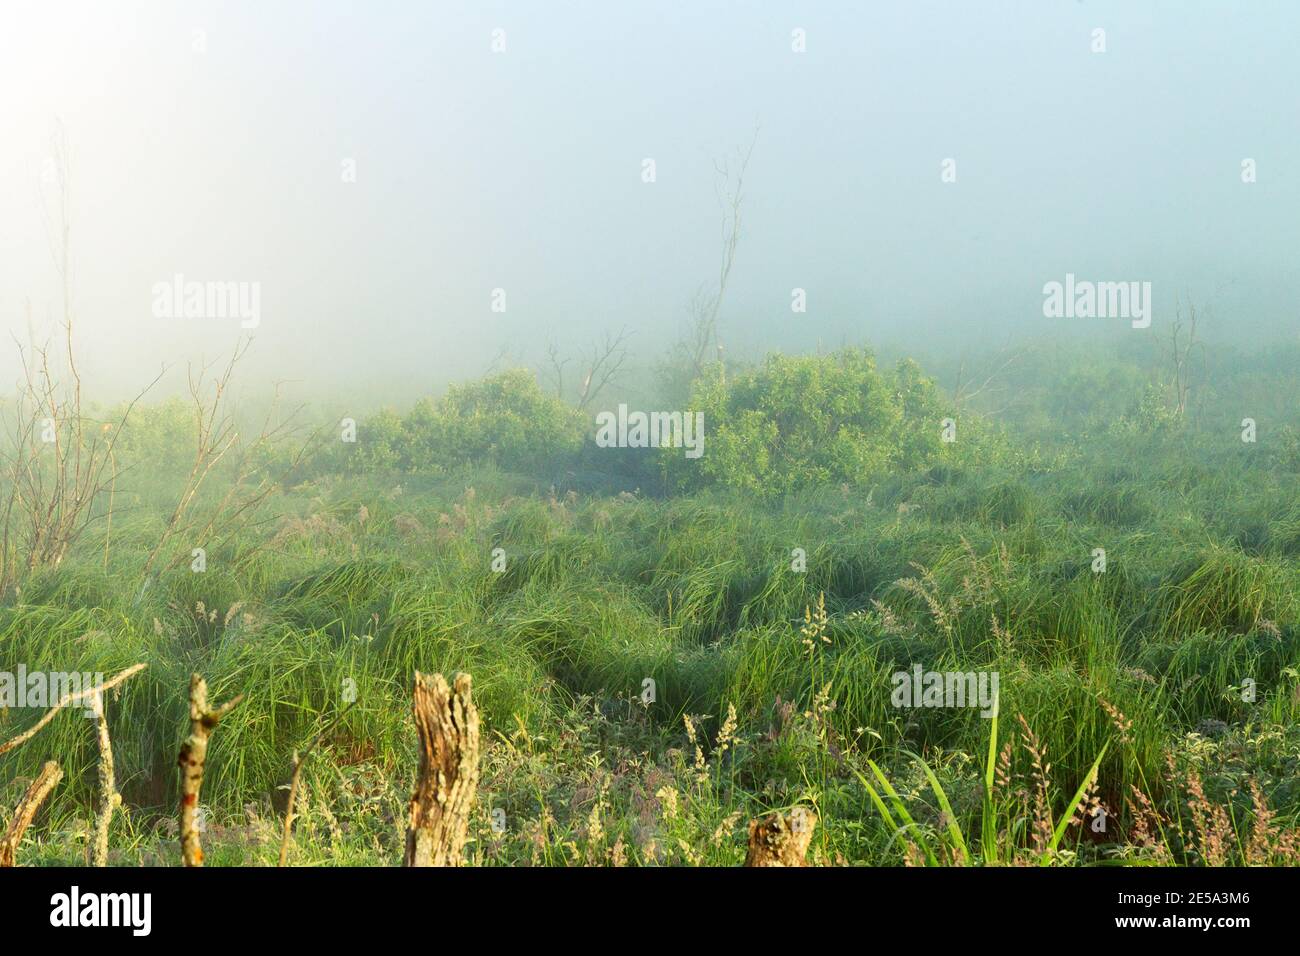 Ein ungewöhnlicher Zustand der Mittsommerwildtier. Dicker kalter Nebel über der Talgwiese und die aufgehende Sonne dringt durch den Dunst und erzeugt ein buntes Bild Stockfoto